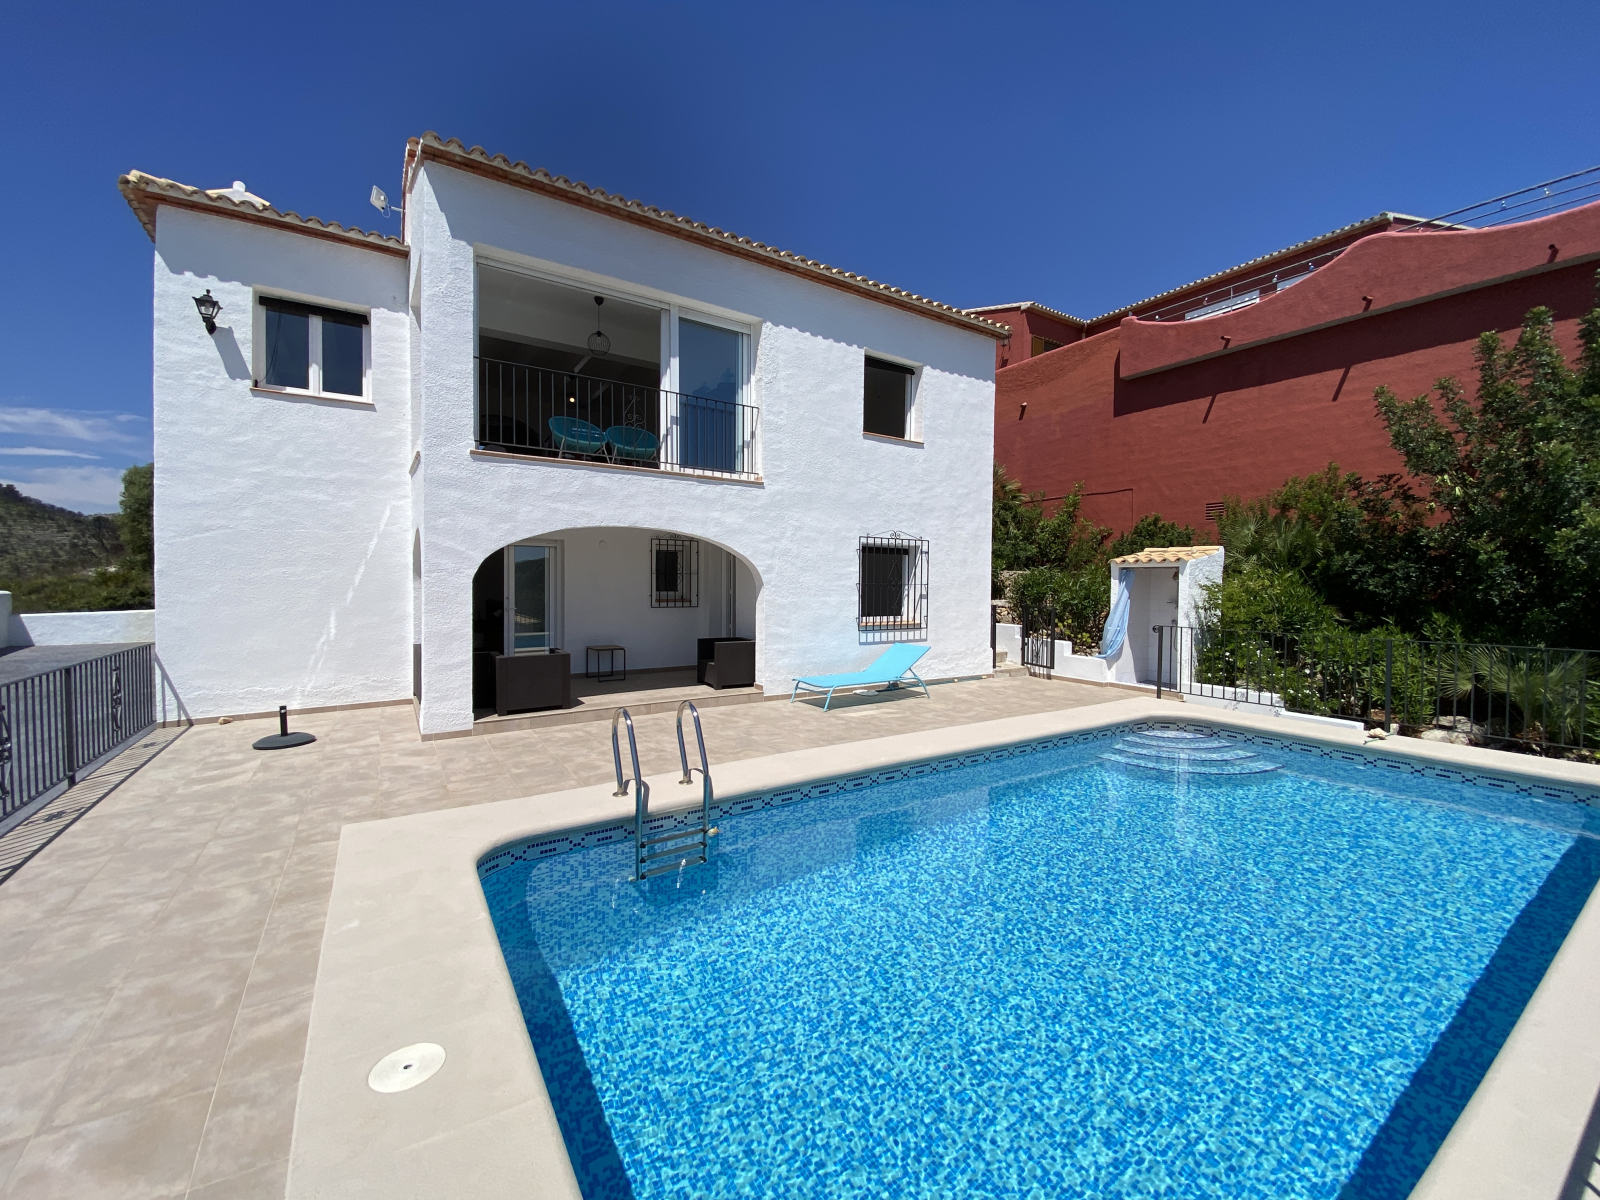 Villa de ensueño, soleada, vistas al mar, piscina, zona residencial tranquila, bonita zona de barbacoa, carport, etc.